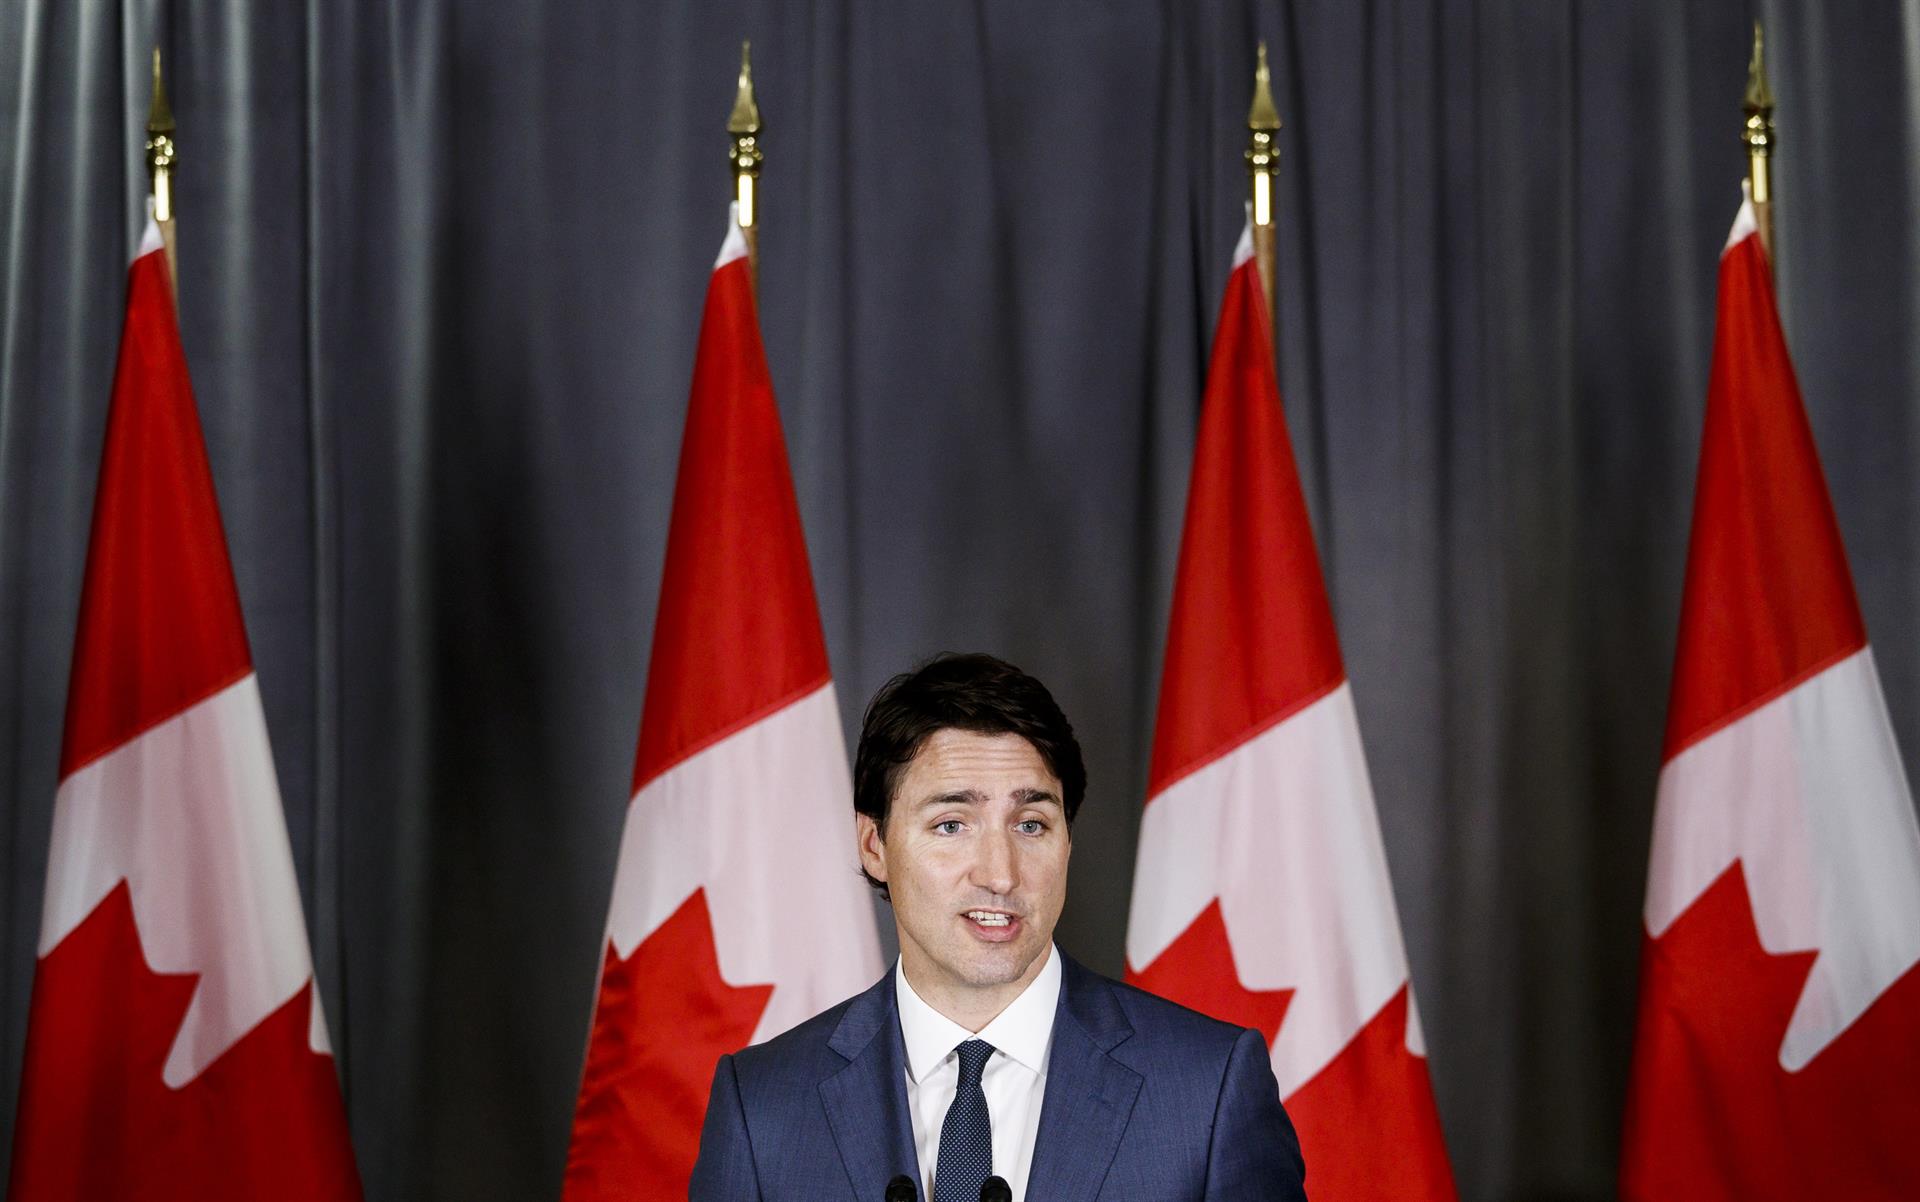 El primer ministro de Canadá Justin Trudeau. Imagen de archivo. EFE/JUSTIN LANE
